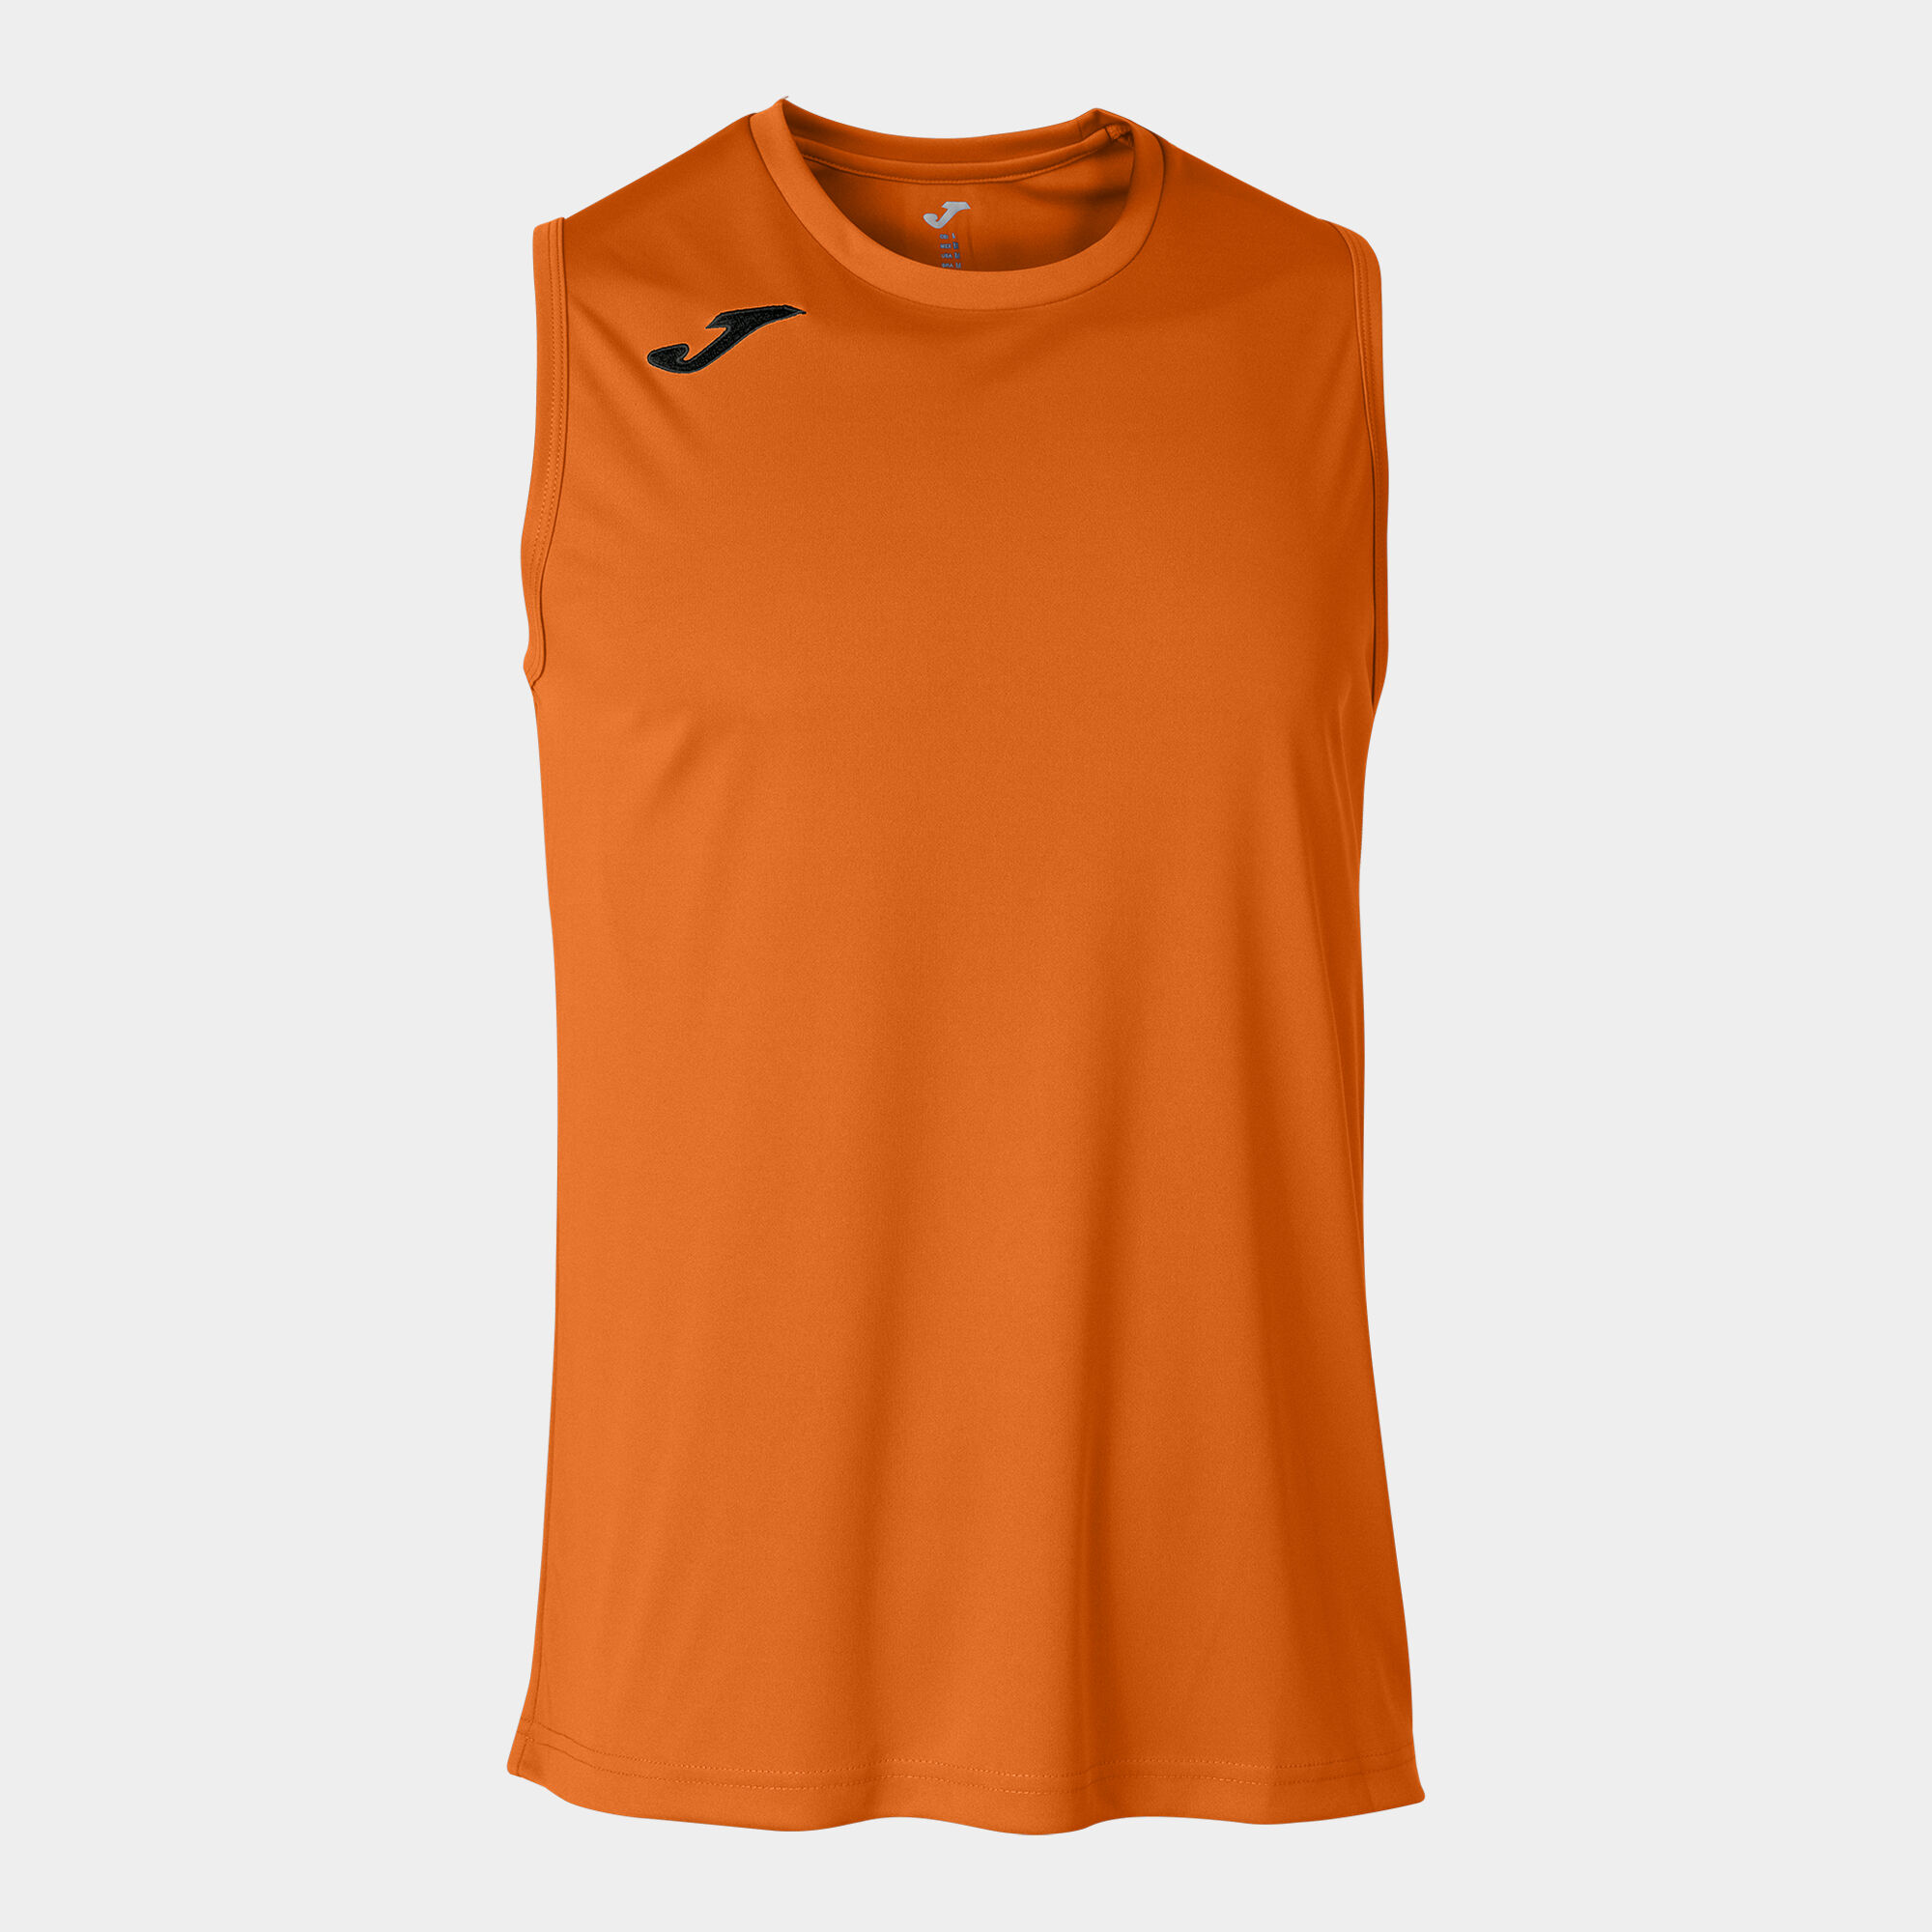 Shirt s/m mann Combi Basket orange